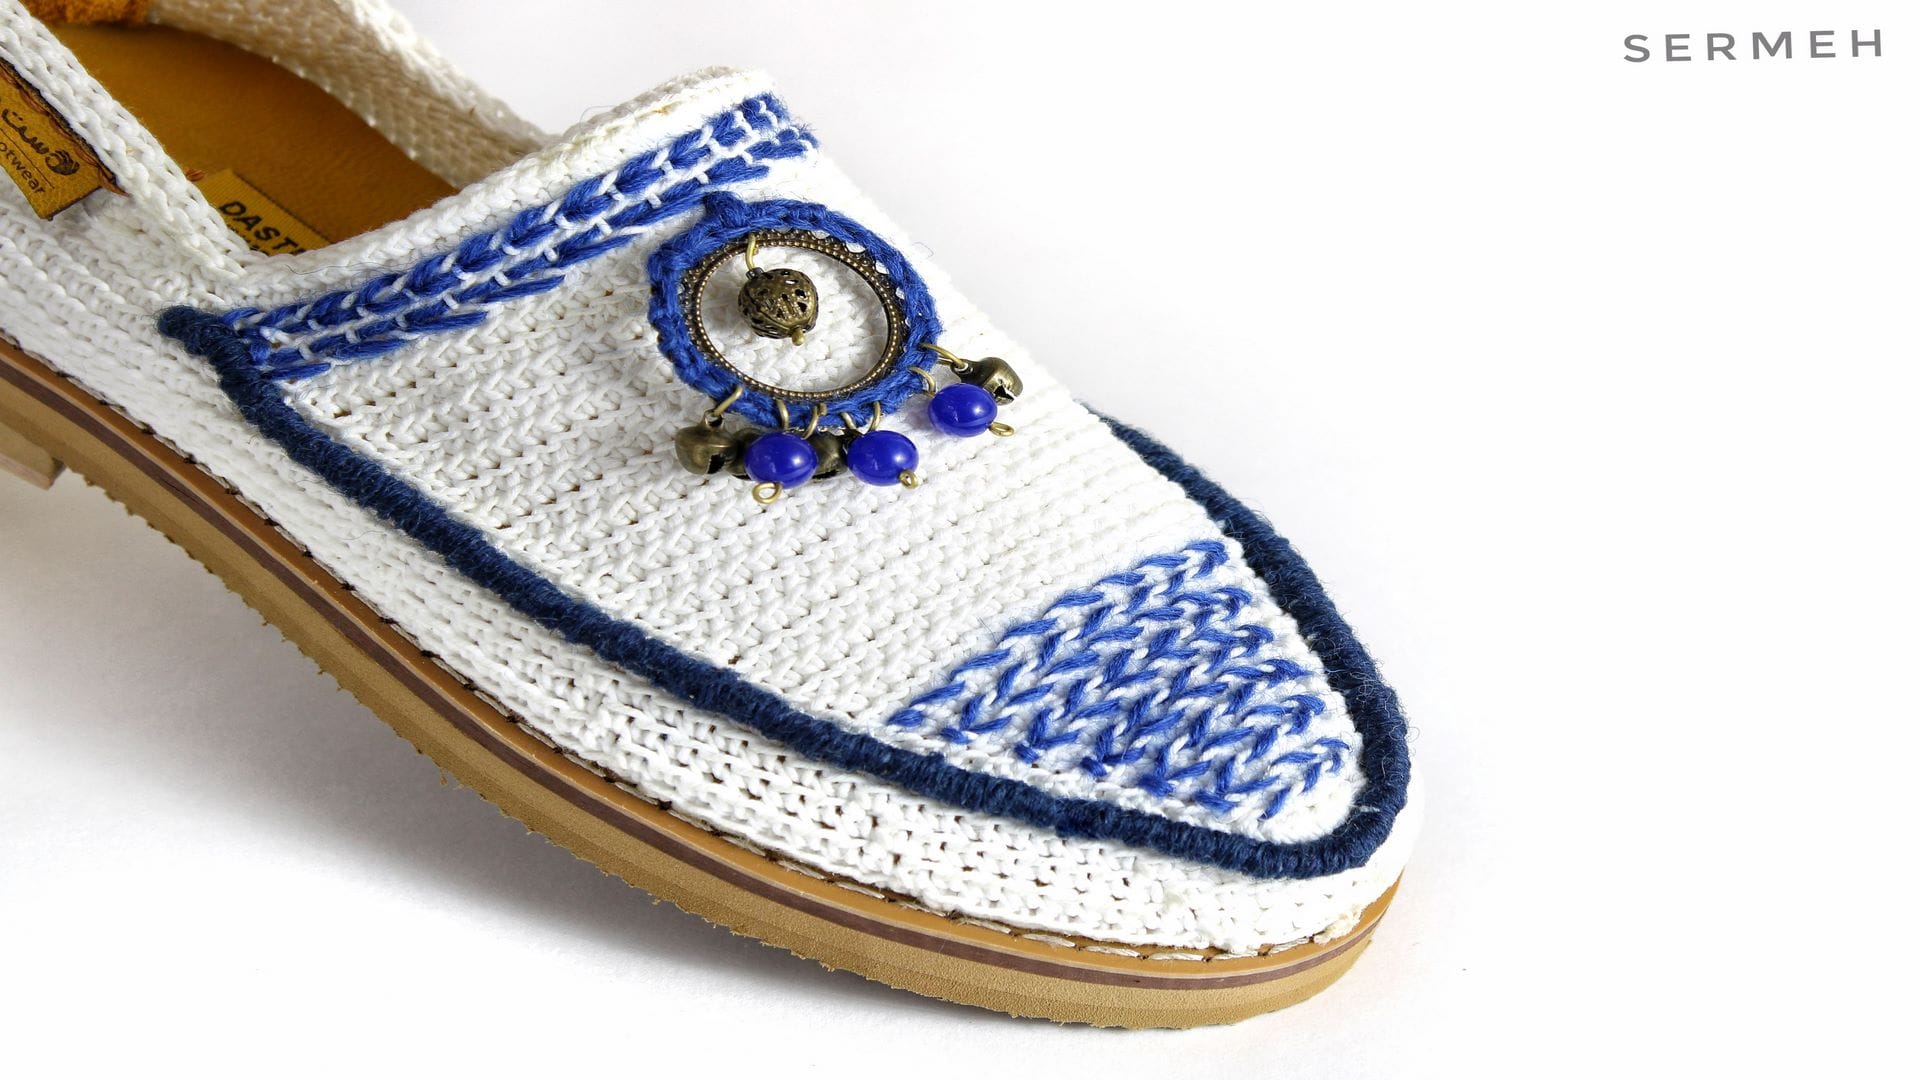 Giveh Persian Handmade Shoes ,Klash Persian Footware | Sermeh